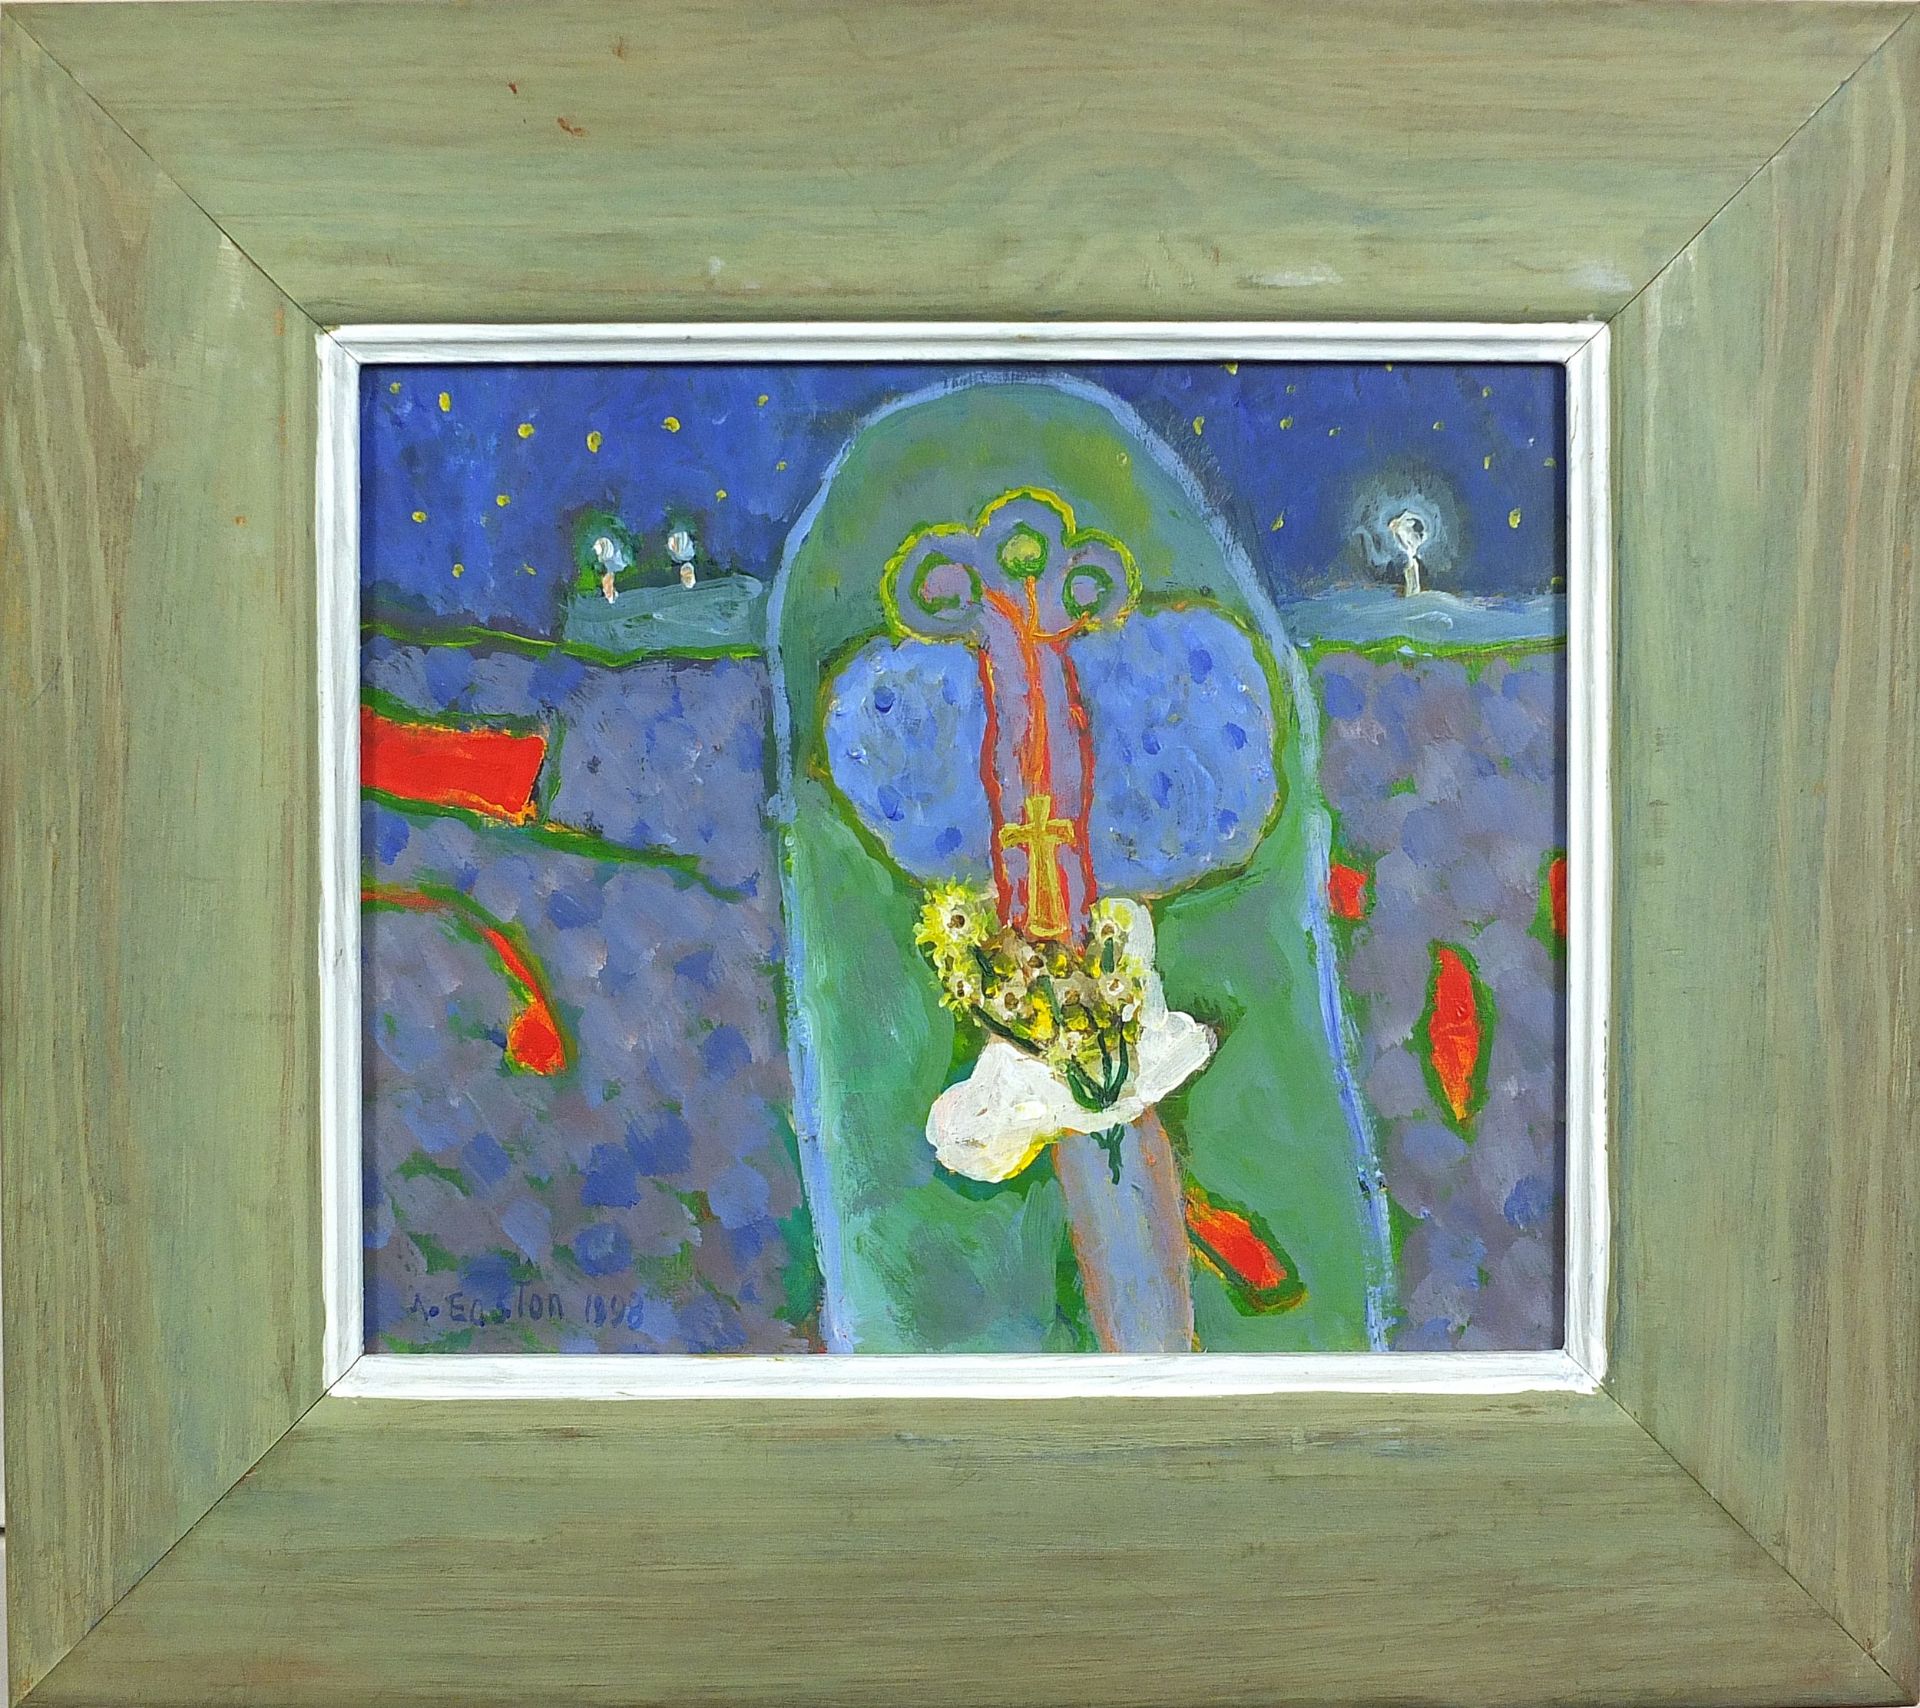 Arthur Easton 1998 - Sunset Newdigate, surreal oil on board, details verso, framed, 21.5cm x 18cm - Image 2 of 5